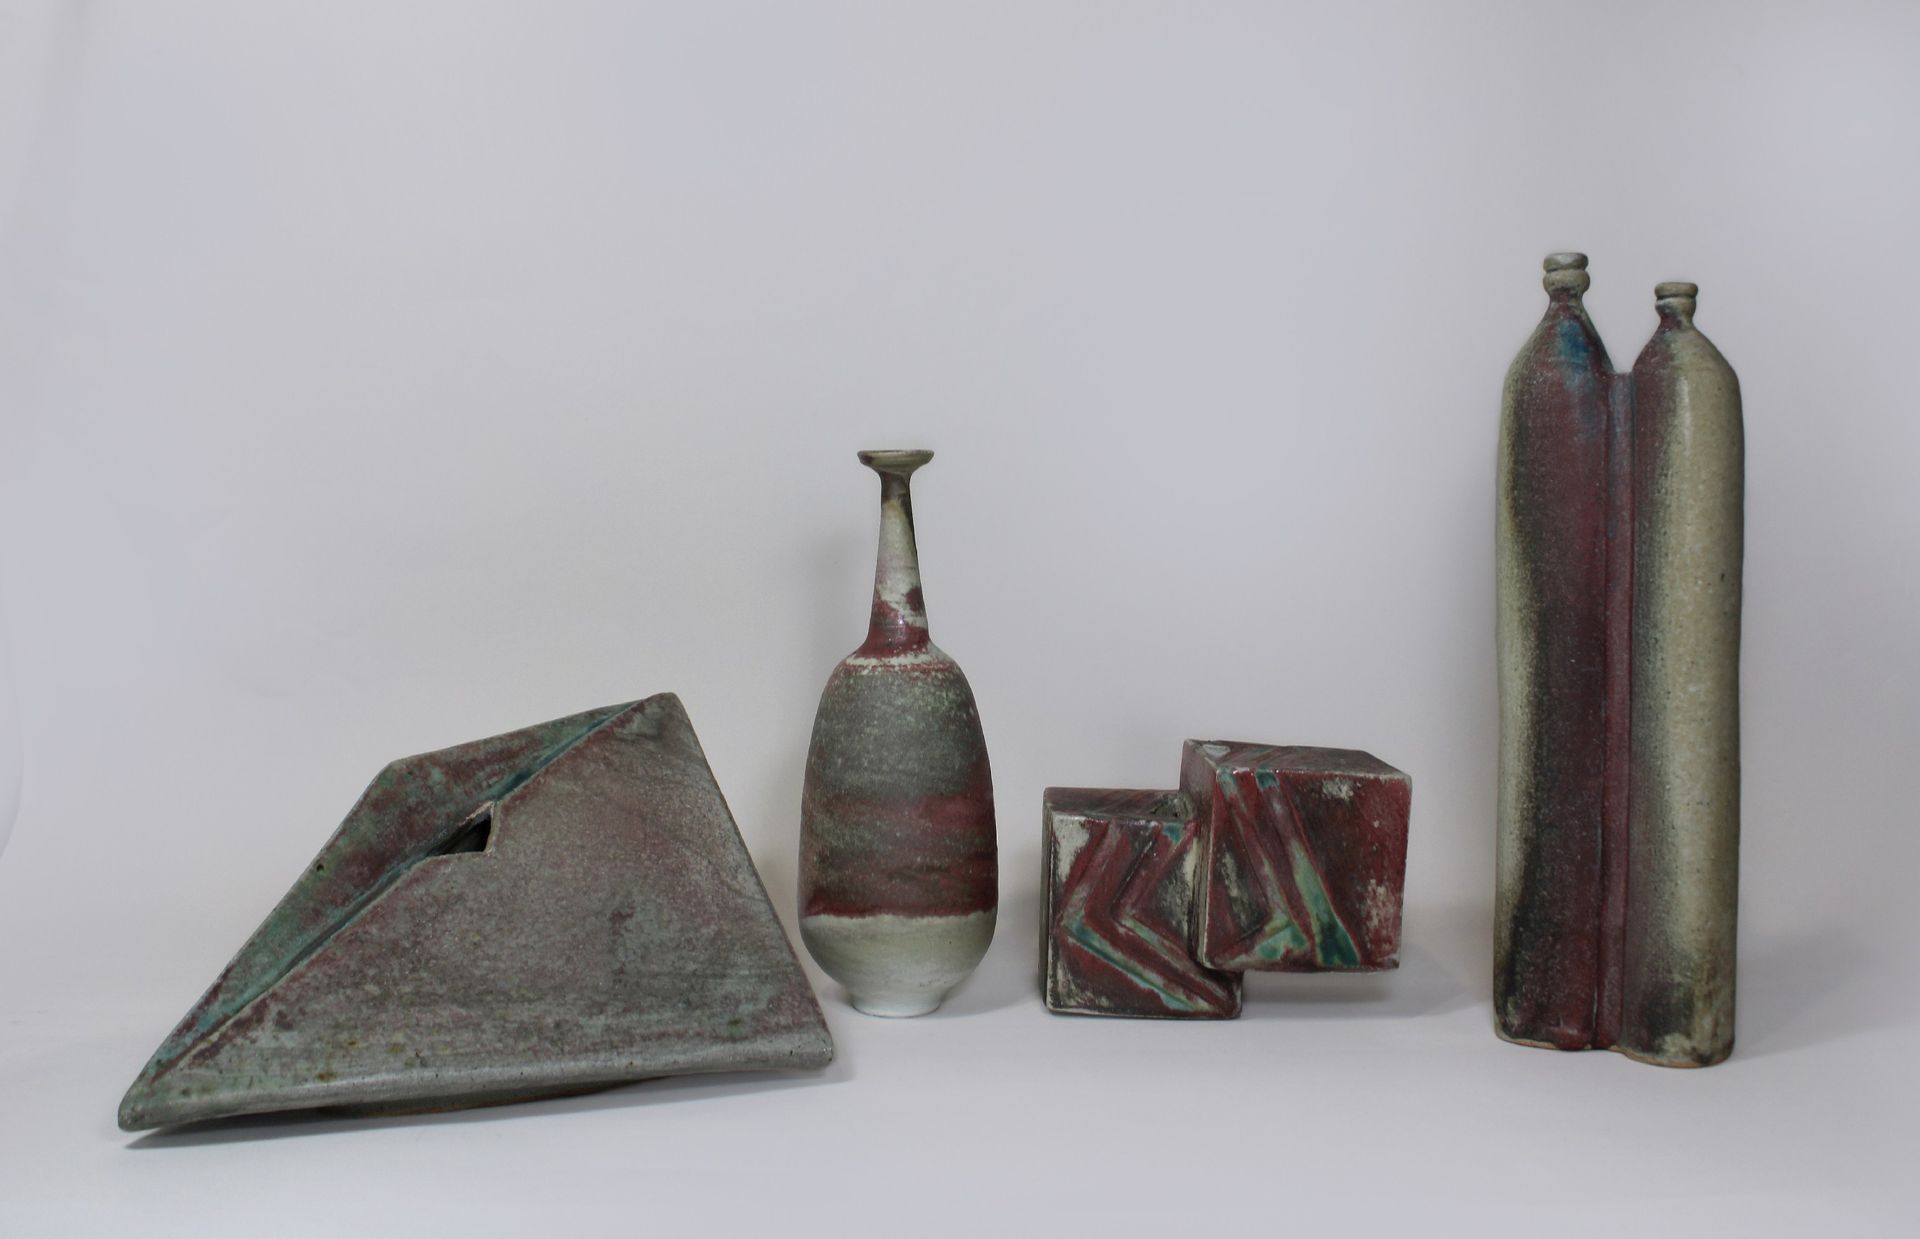 Vier Keramikobjekte 四件陶瓷制品，未知艺术家，不同形式的装饰花瓶，炻器，绿色和红色渐变，底部有印章，状况良好。